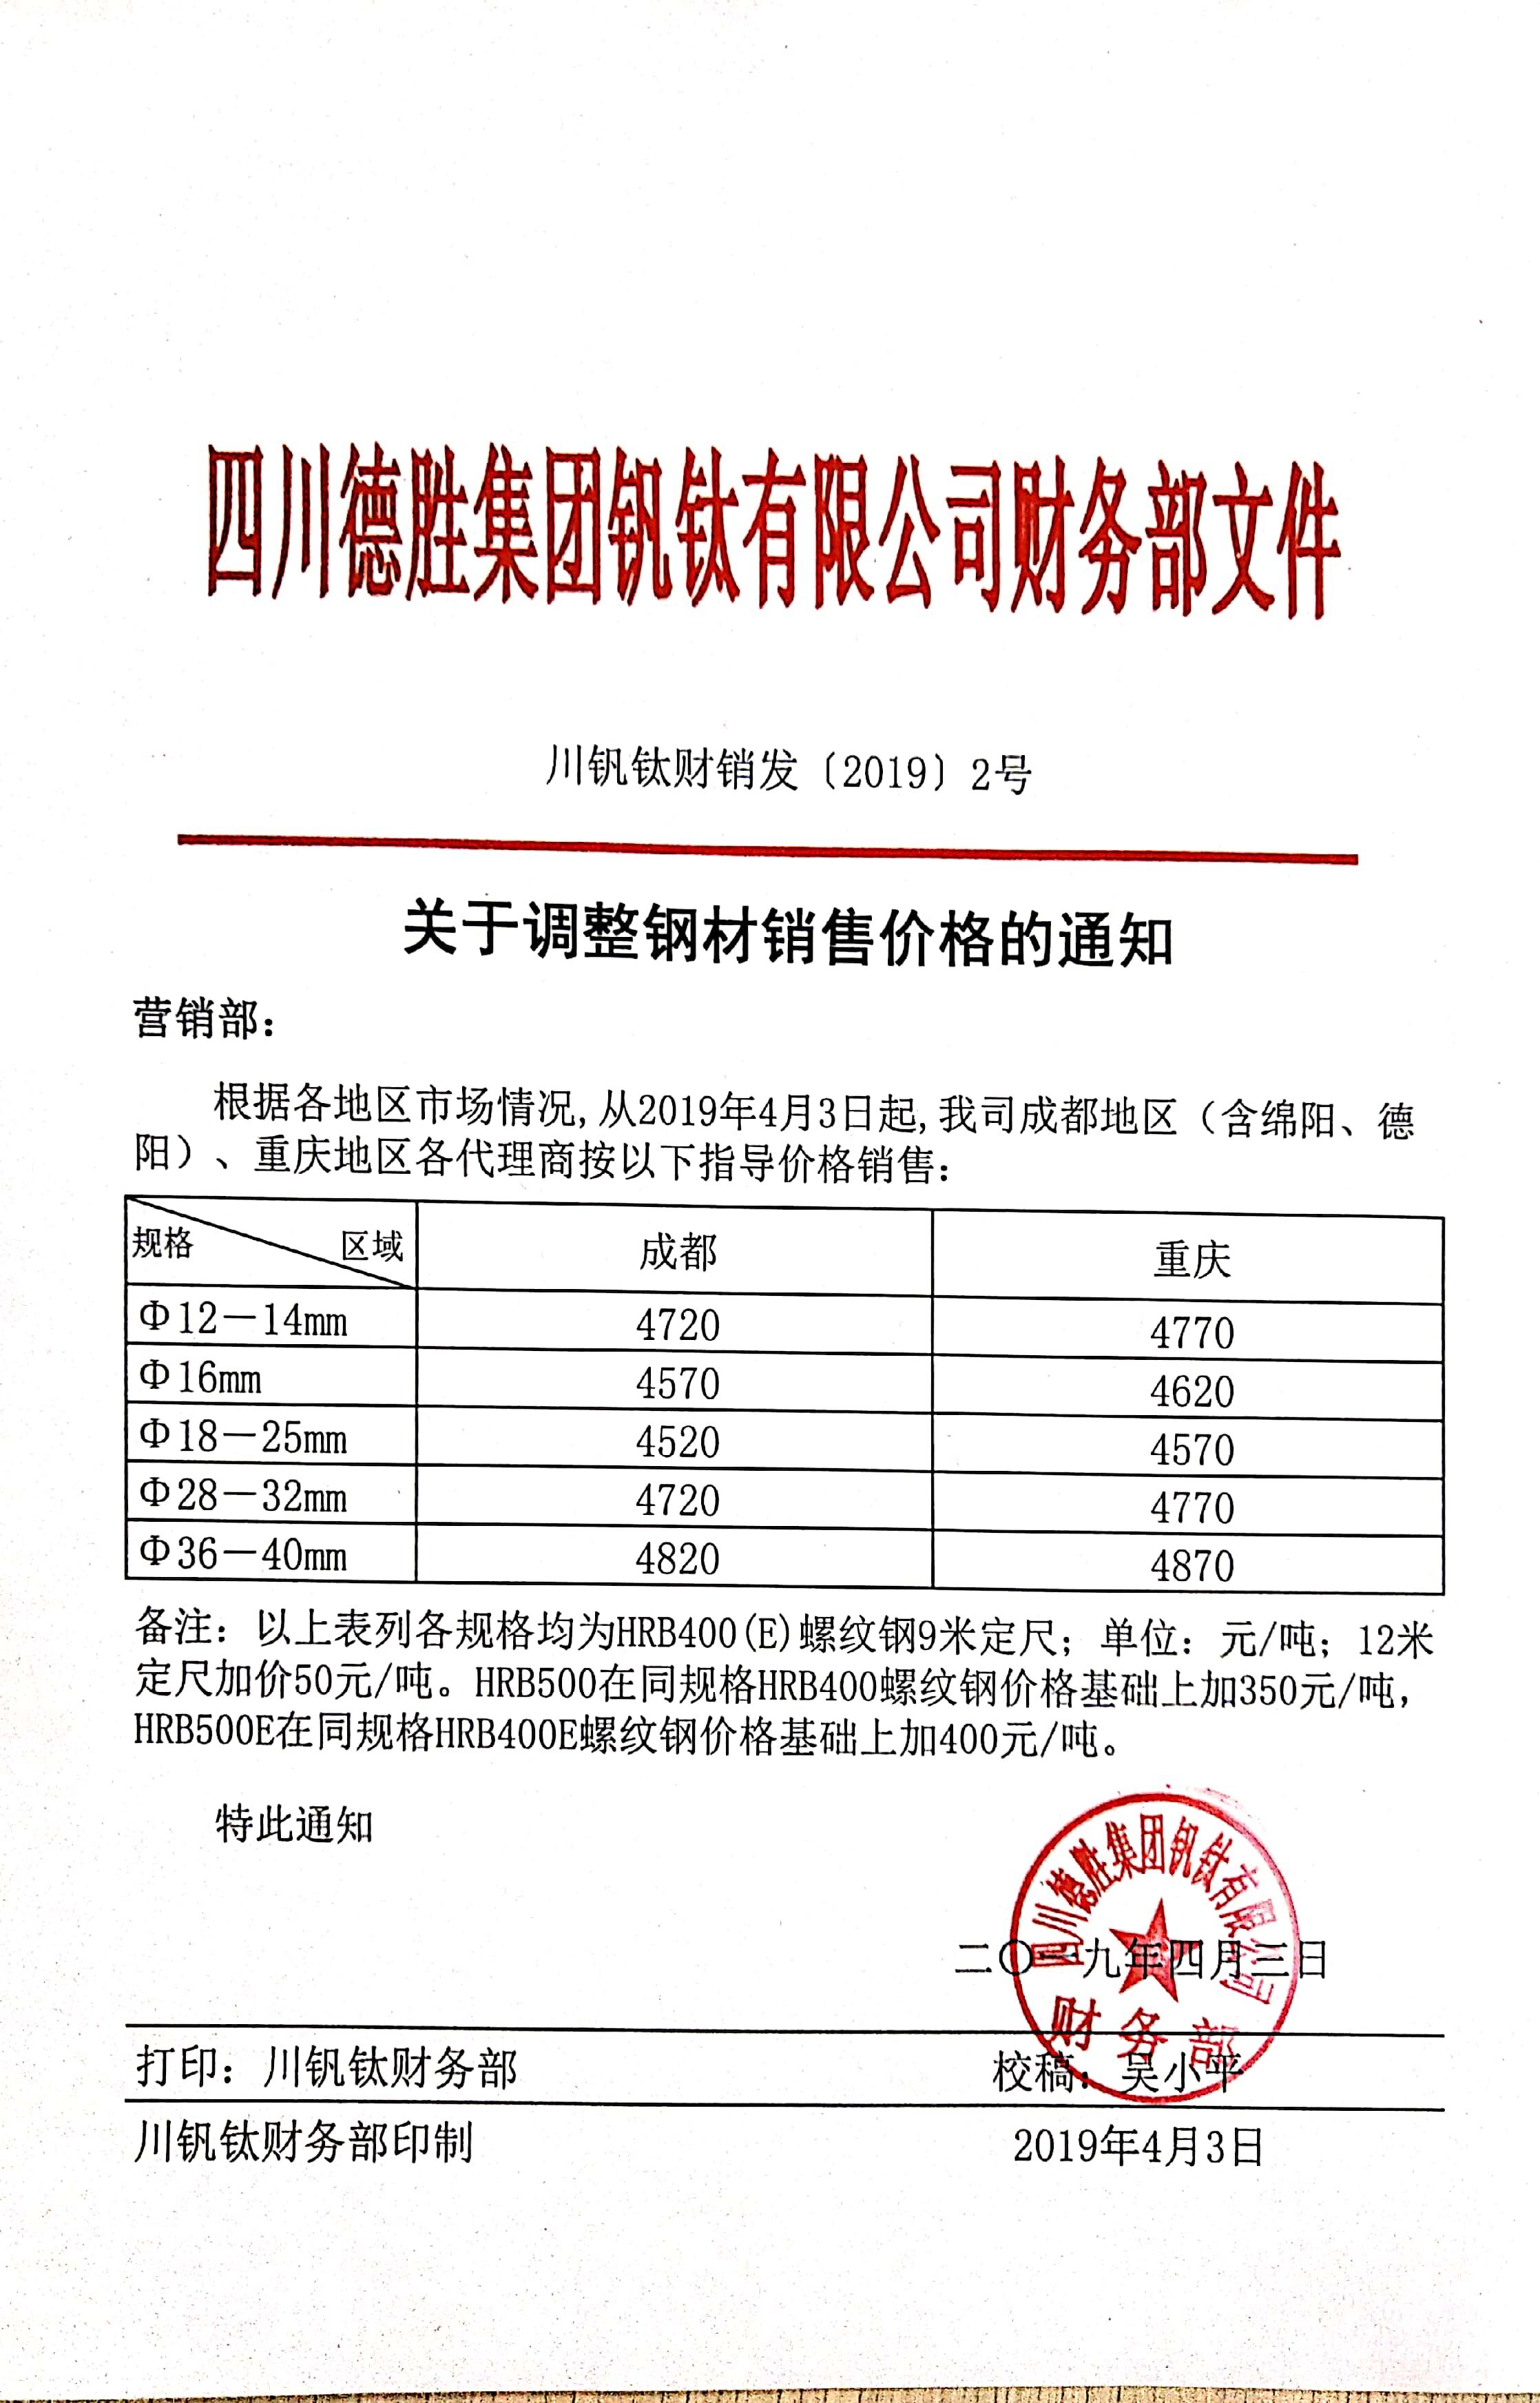 四川德胜集团钒钛有限公司4月3日钢材销售指导价